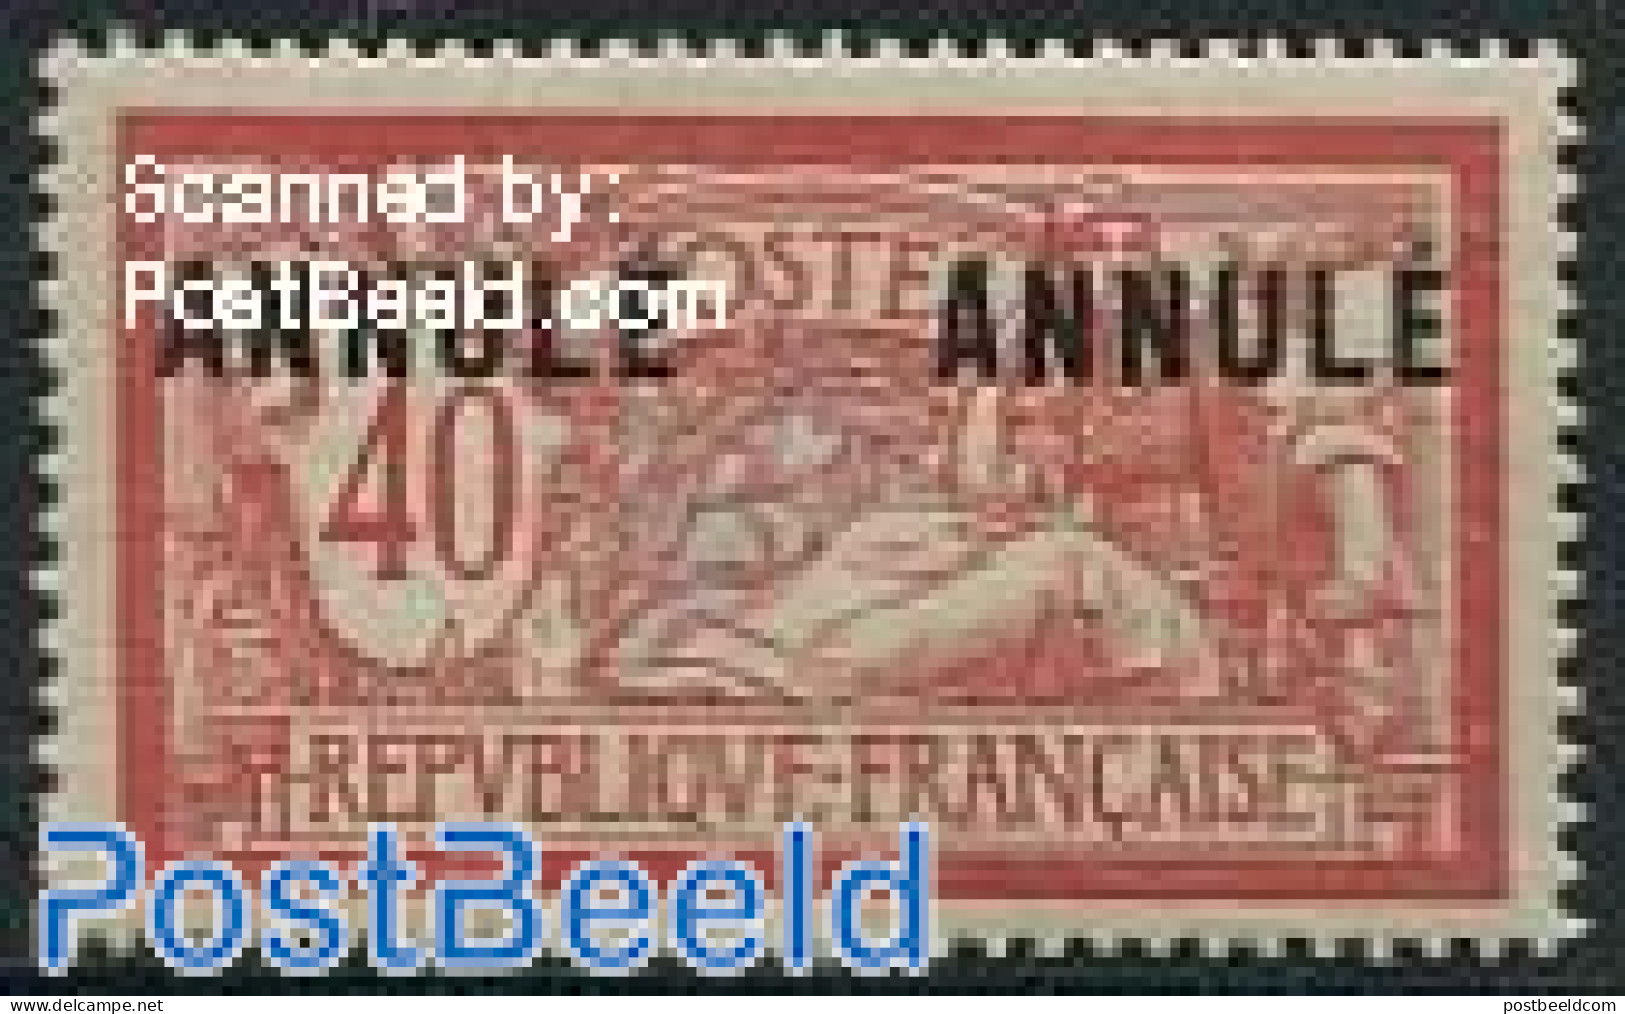 France 1900 40c, ANNULE, Stamp Out Of Set, Unused (hinged) - Ongebruikt